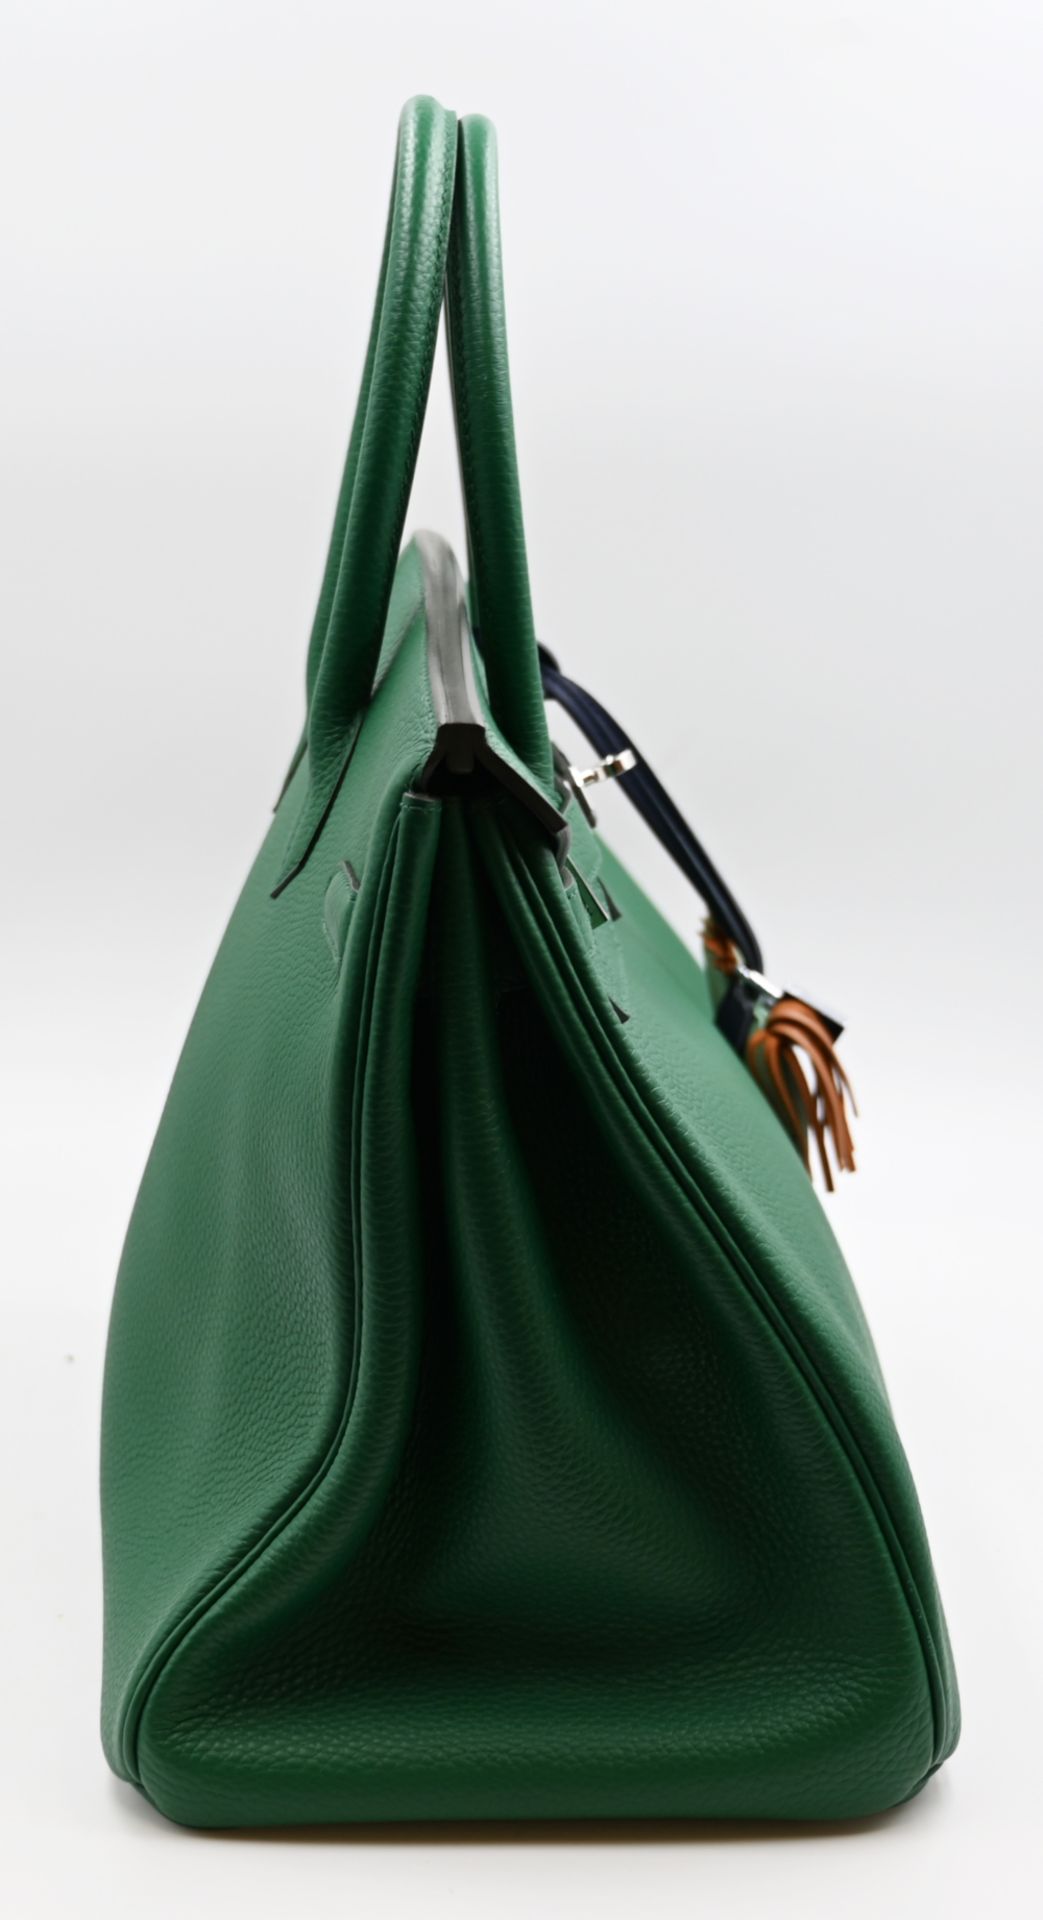 1 Damenhandtasche HERMÈS Modell: Birkin 35 grün - Bild 6 aus 13